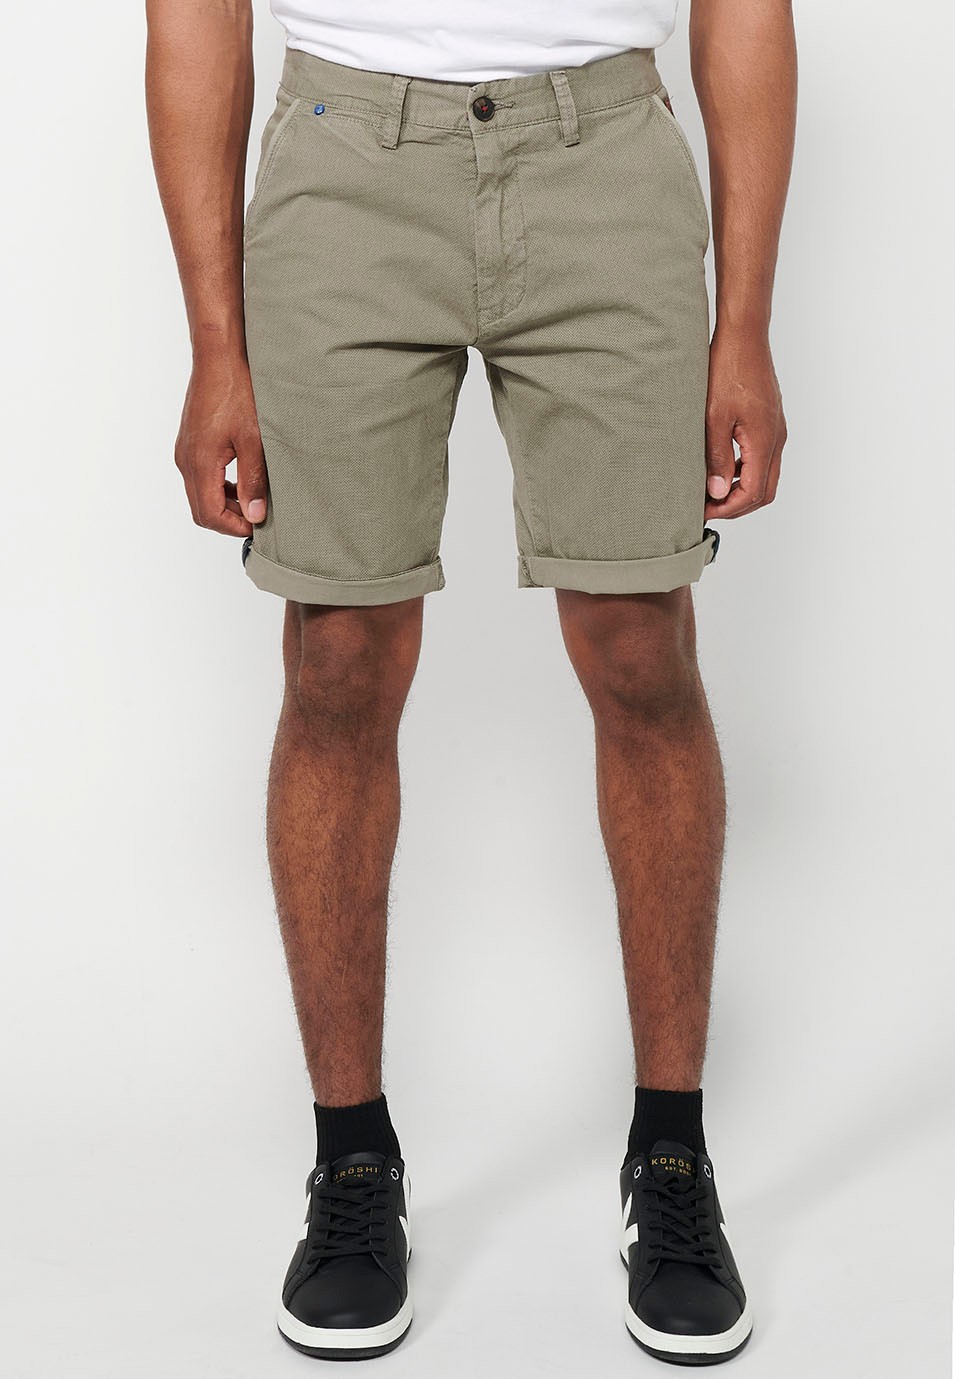 Herren-Bermuda-Chino-Shorts mit Umschlag, Reißverschluss vorne und Knopfverschluss sowie vier Taschen in Nerzfarbe 4